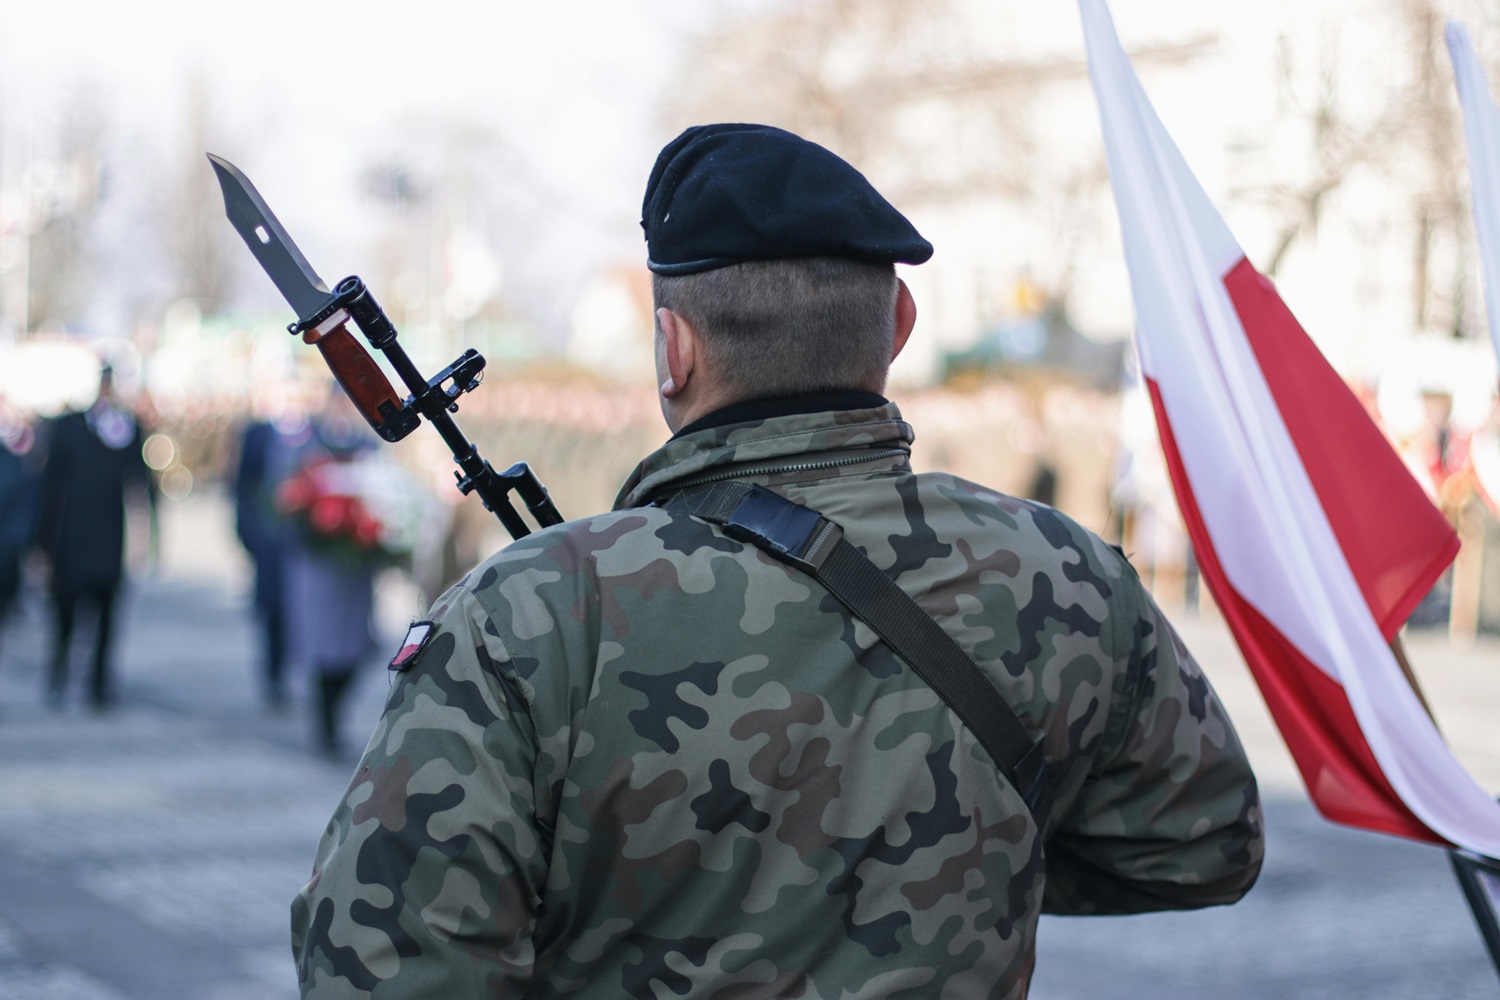 Stiprėja Lenkijos visuomenės parama galimam jų karių dalyvavimui kare Ukrainoje